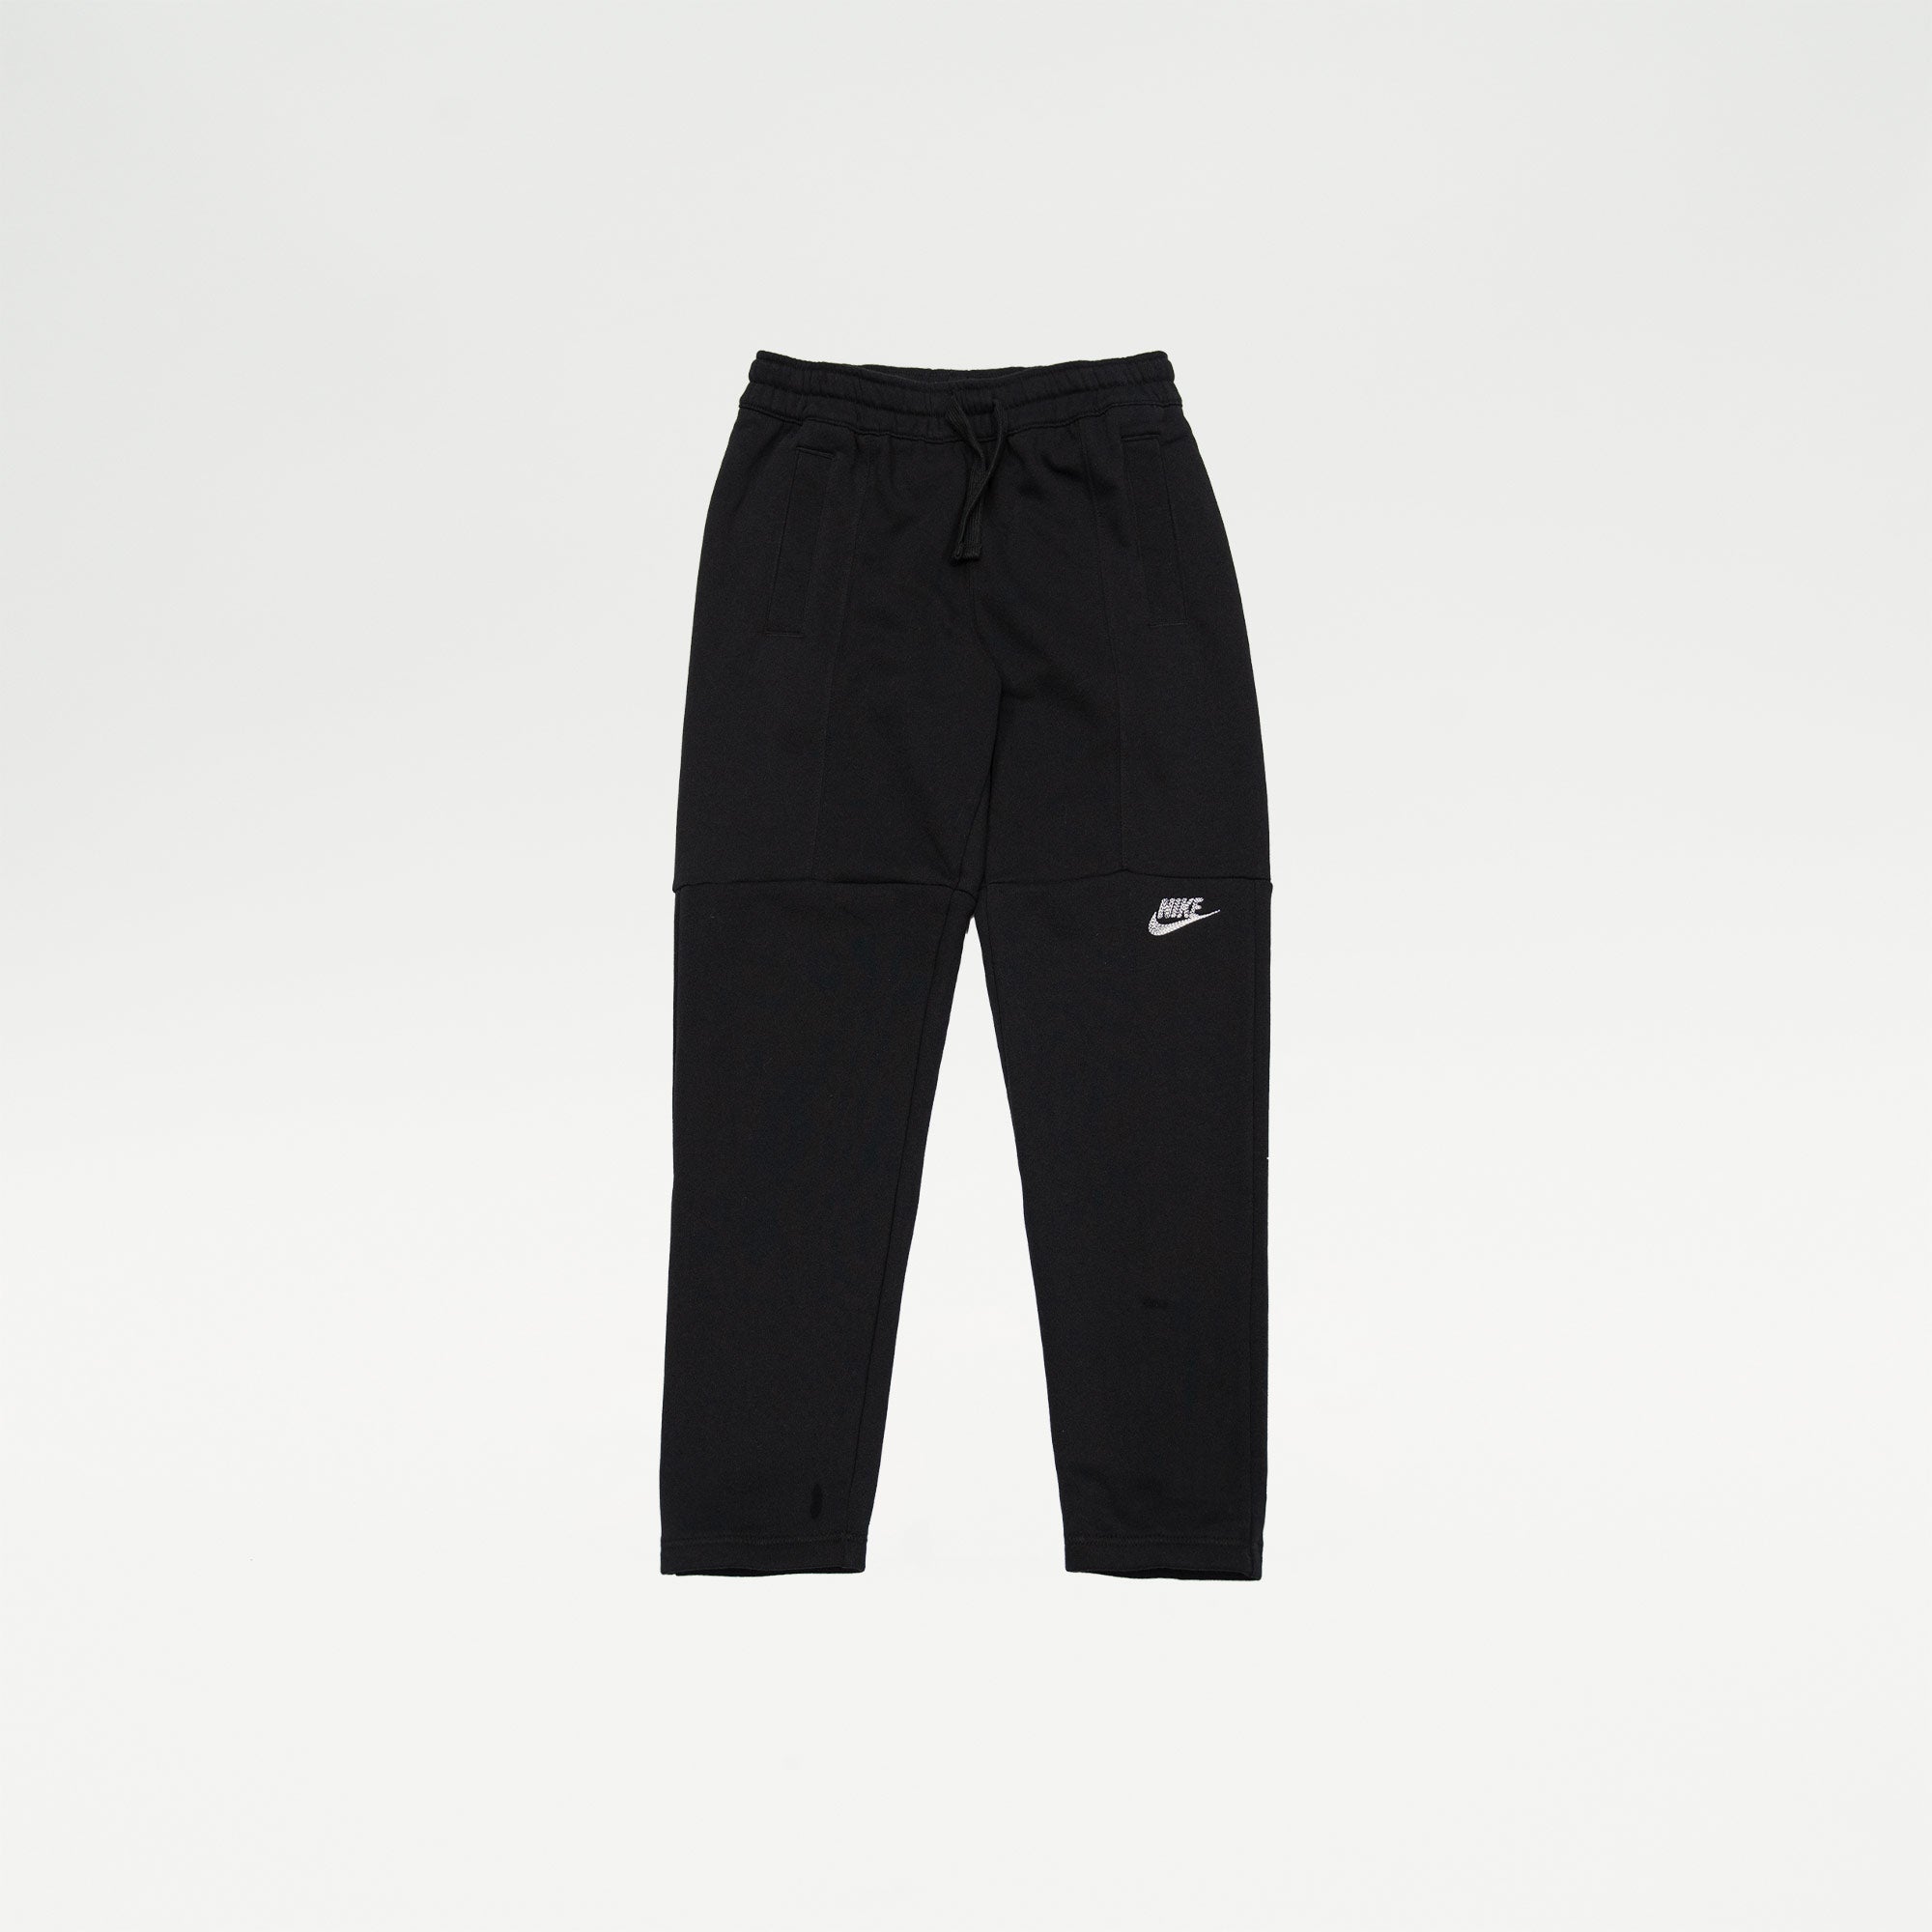 Nike Boys Sportswear Pants